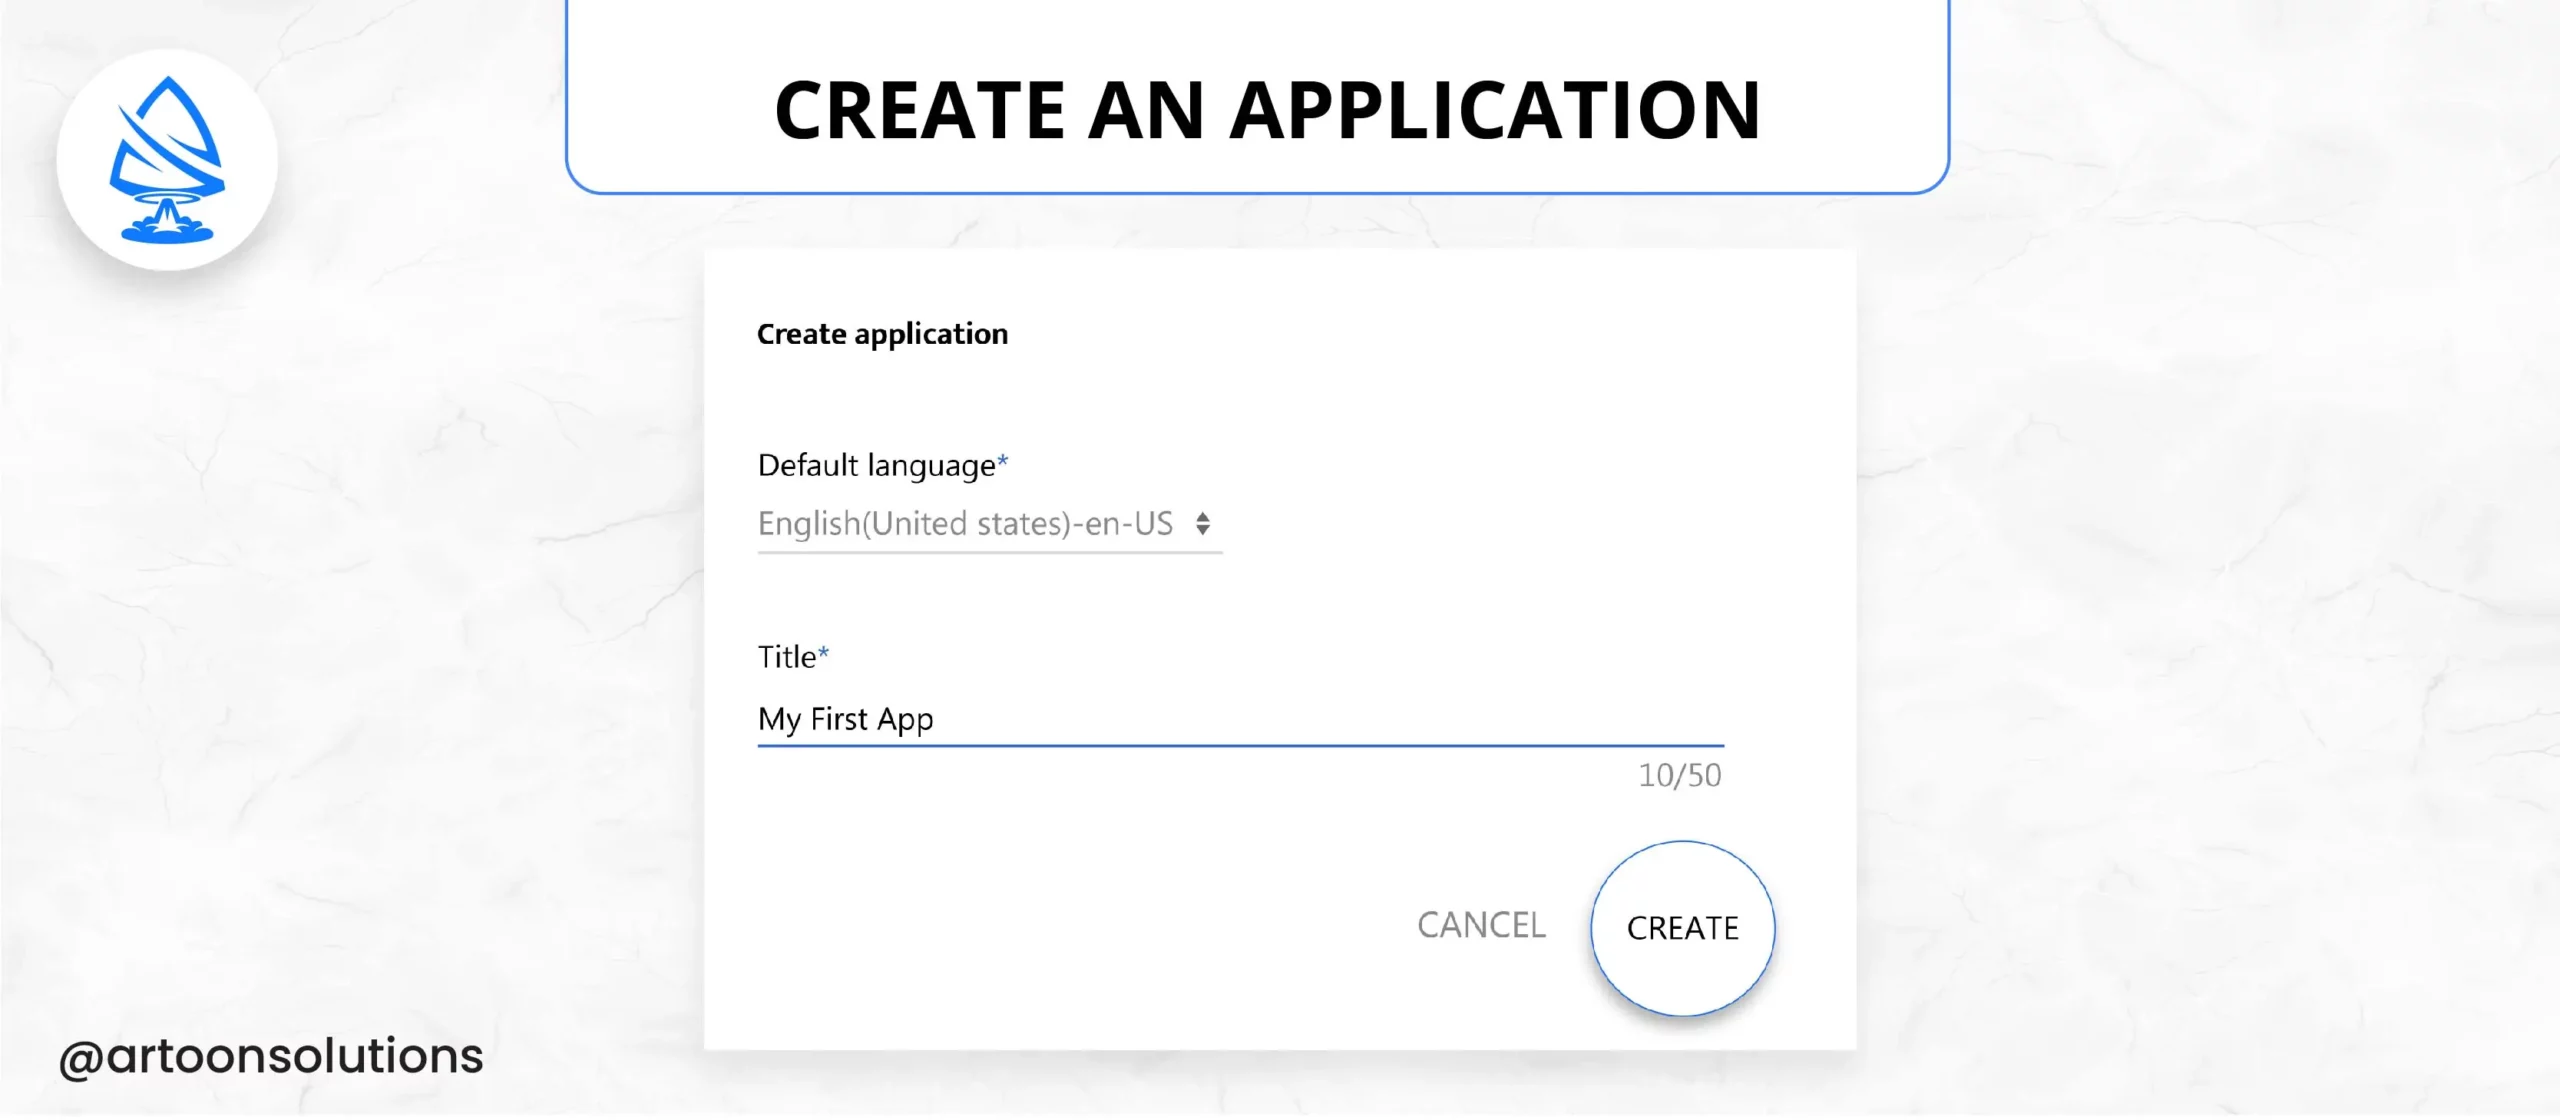 Create an Application 